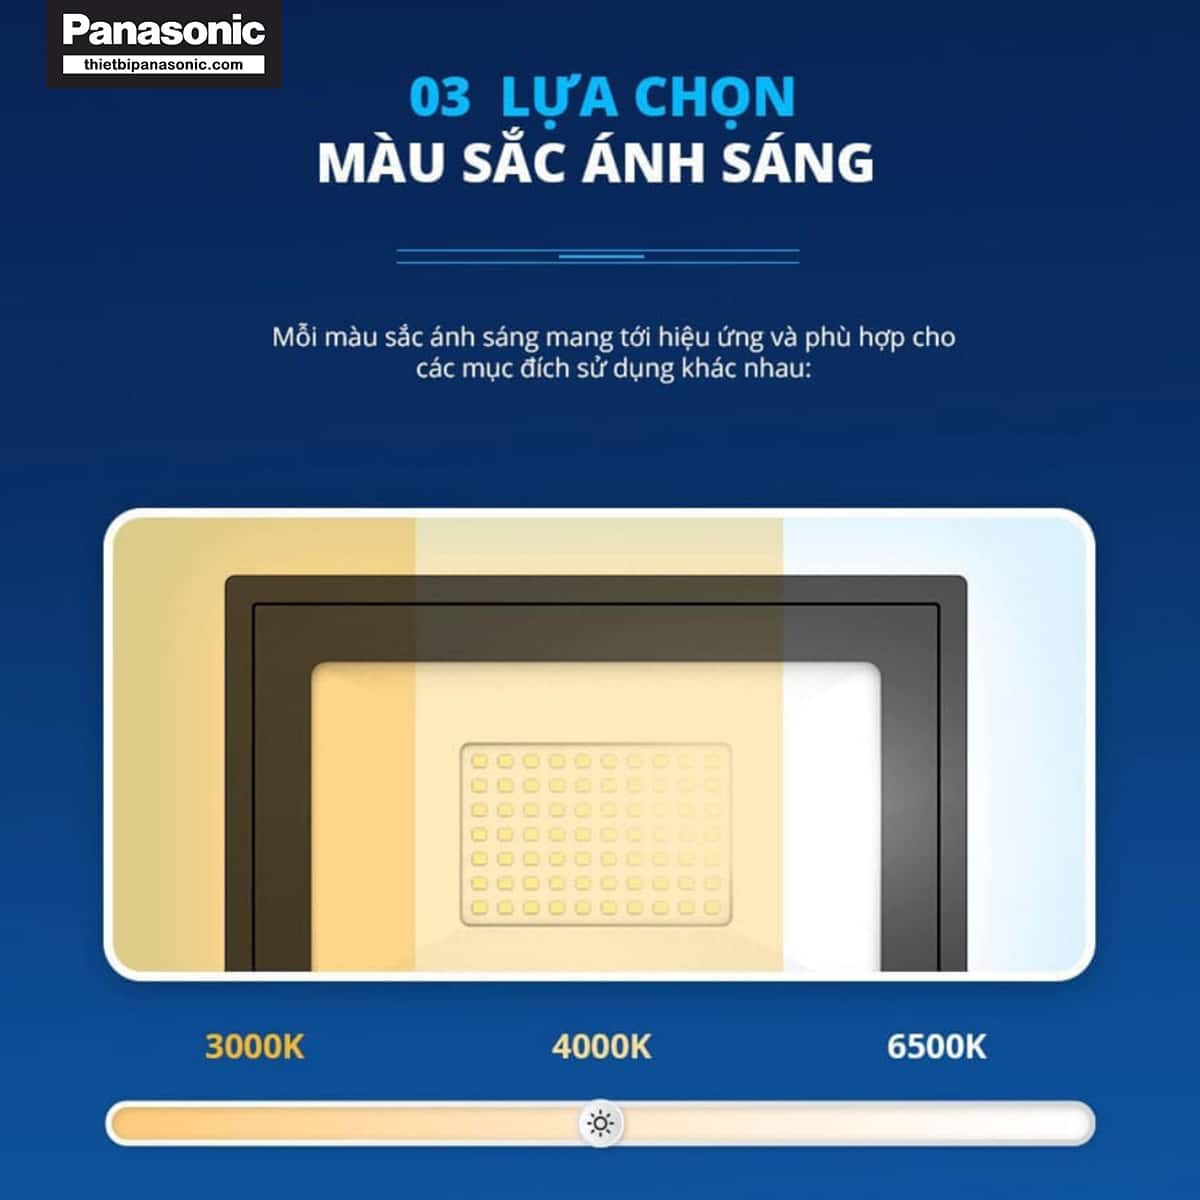 Đèn pha Panasonic có 3 lựa chọn màu ánh sáng khác nhau, mang tới hiệu ứng và phù hợp cho các mục đích sử dụng khác nhau.